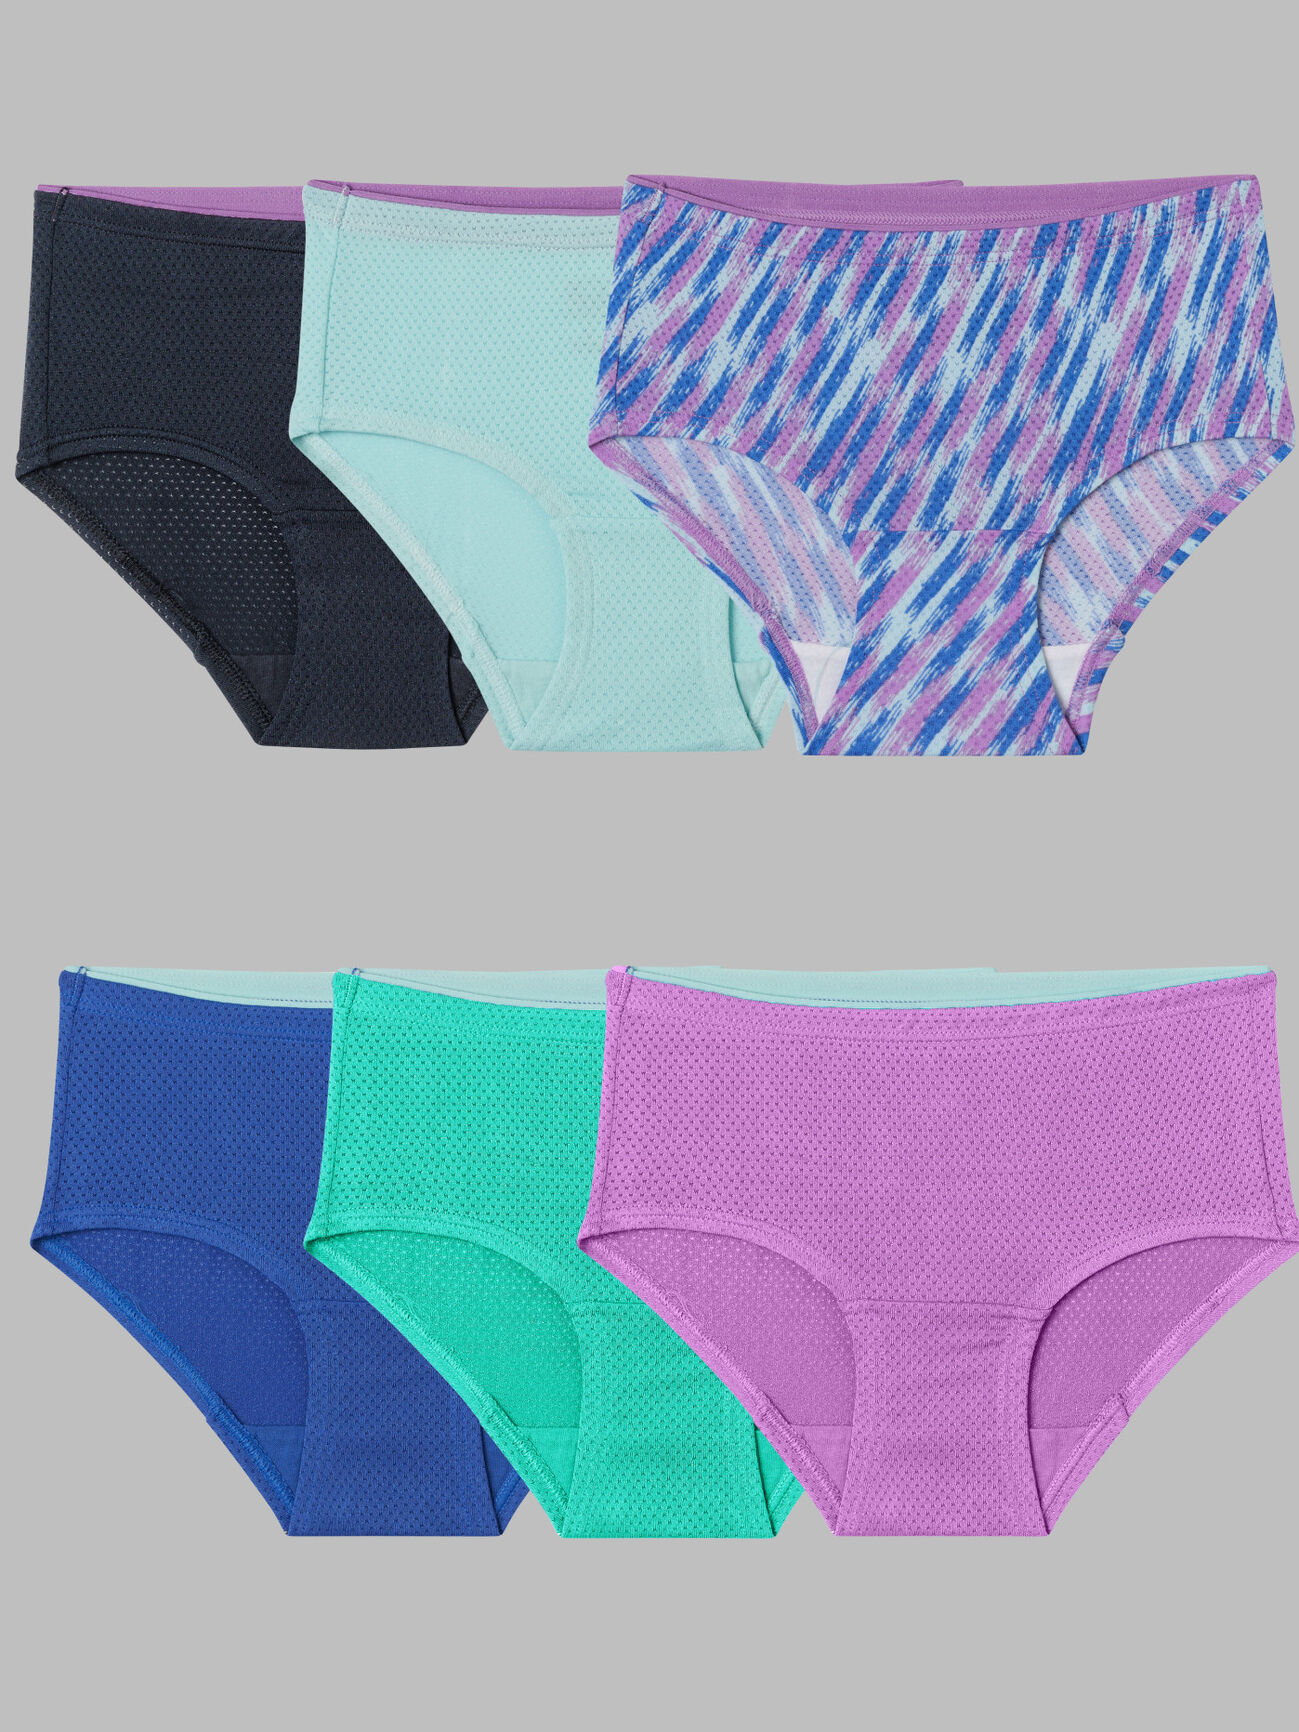 Fruit of the Loom Girls Brief Underwear, 14 Pack Panties, Sizes 4 - 16